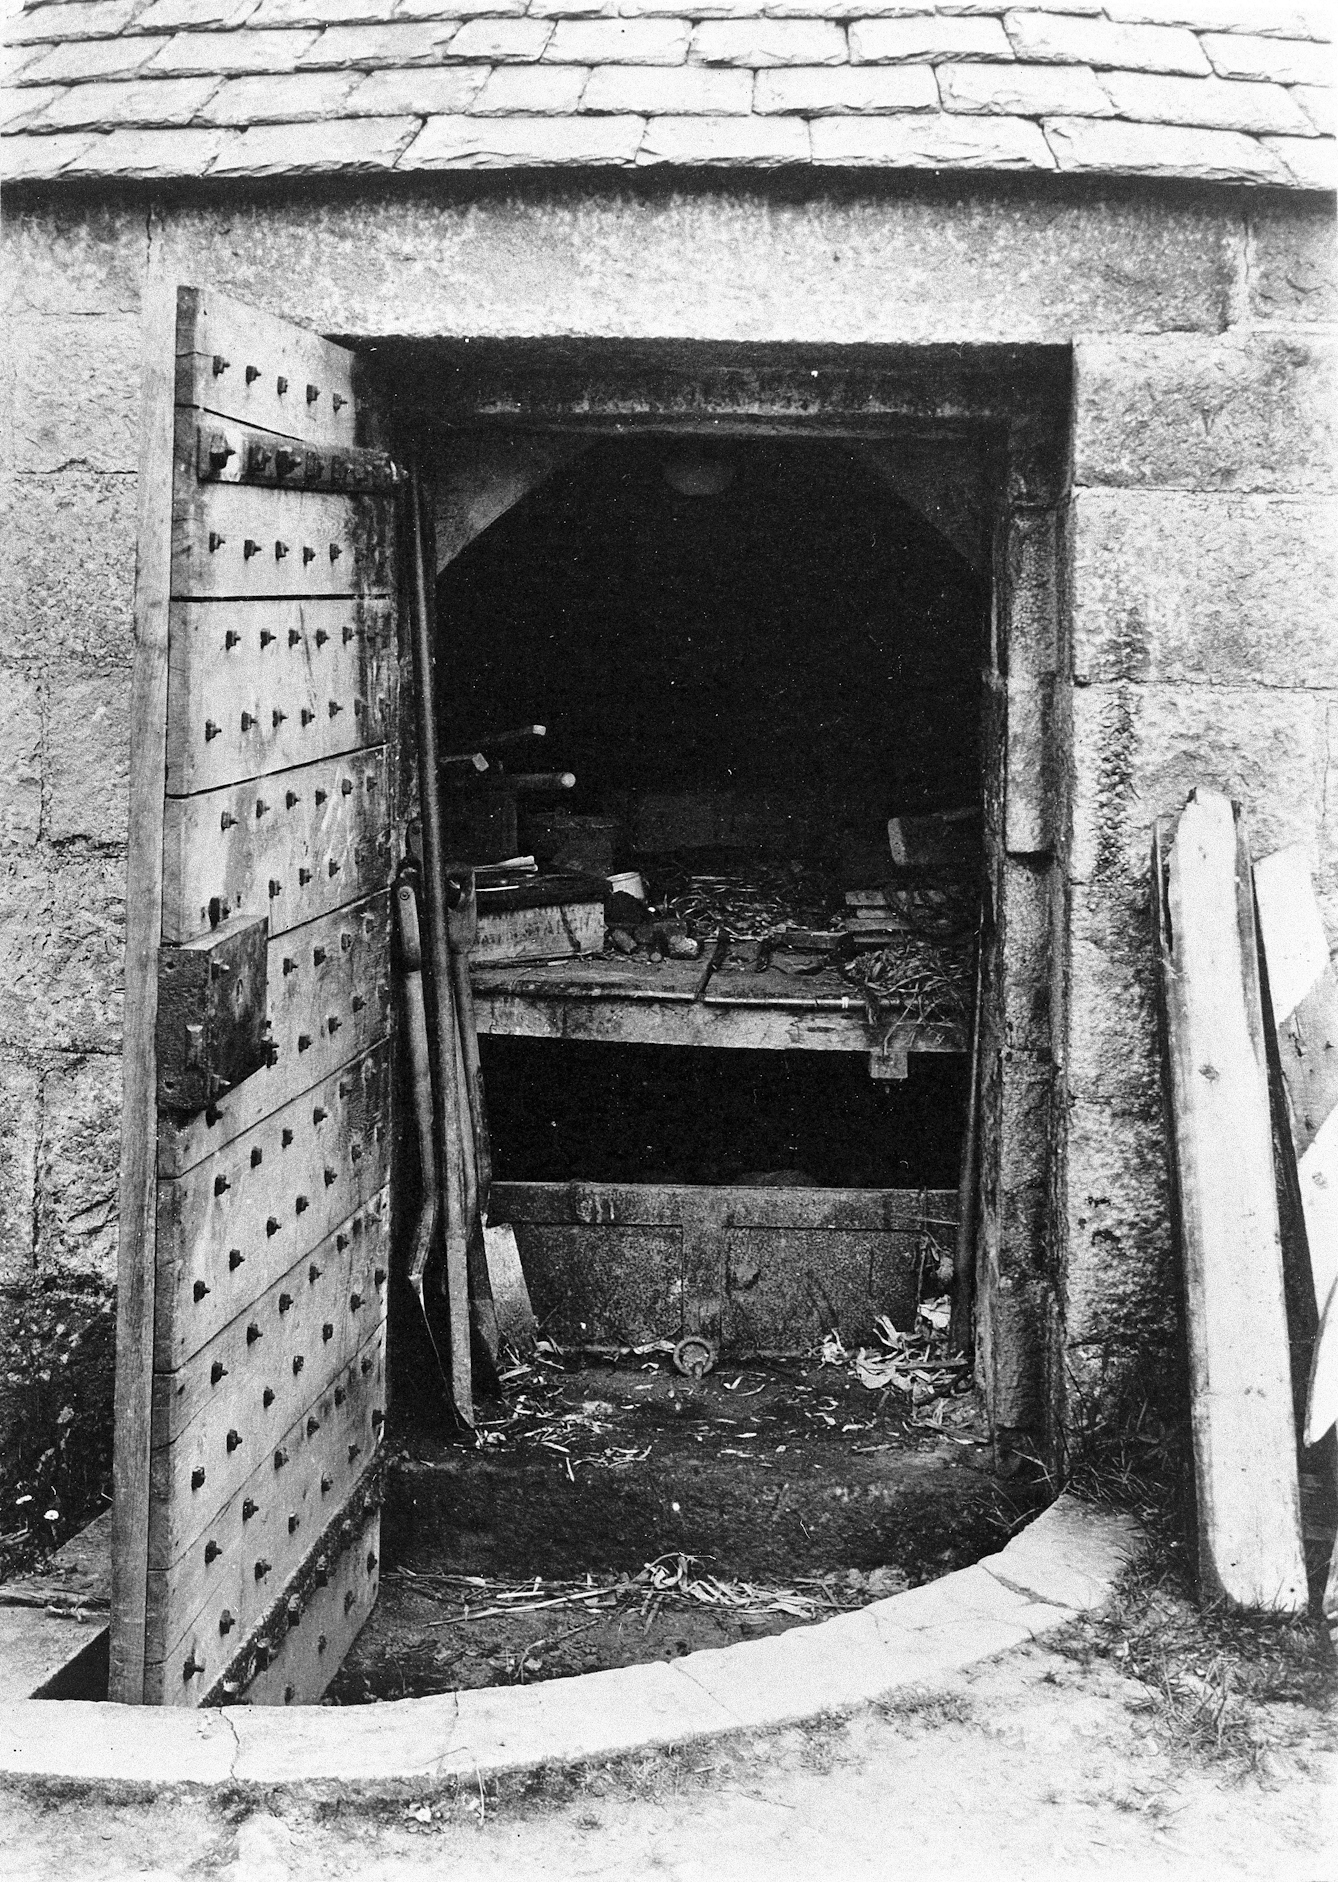 Door open on Vault in graveyard at Udny, Aberdeenshire